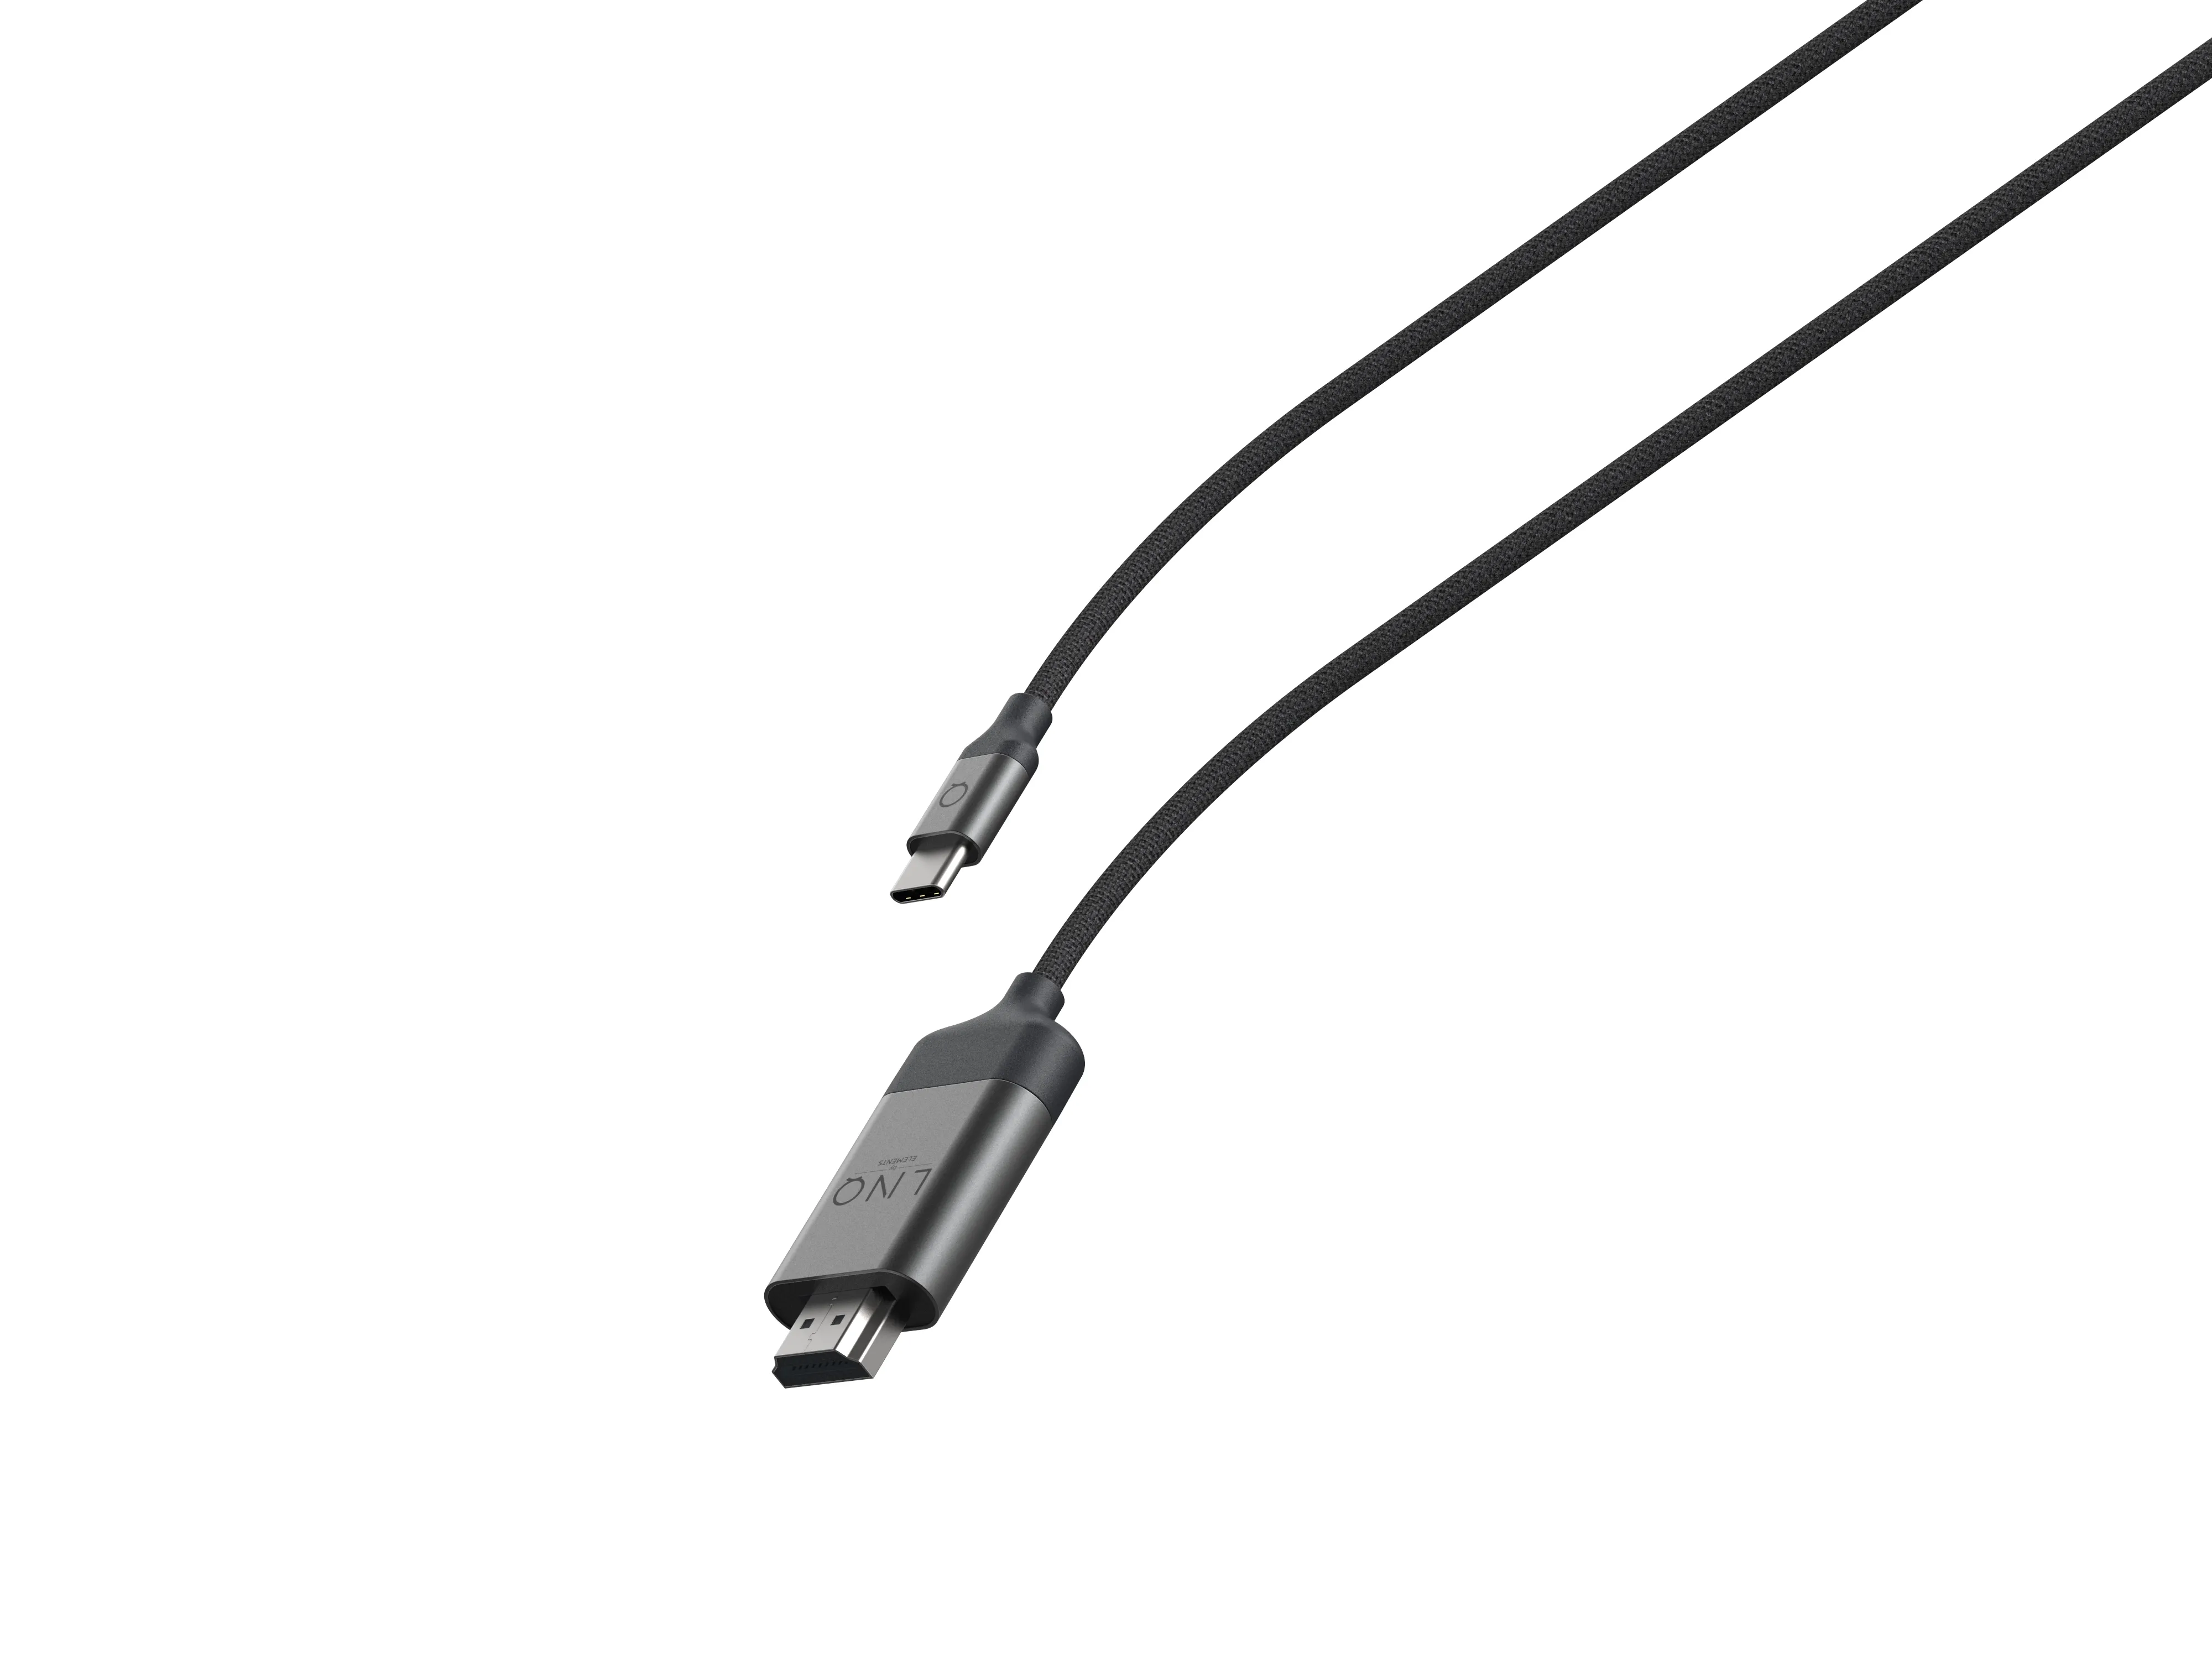 Vente LINQ byELEMENTS 4K HDMI Adapter 2m Cable HDR LINQ byELEMENTS au meilleur prix - visuel 10